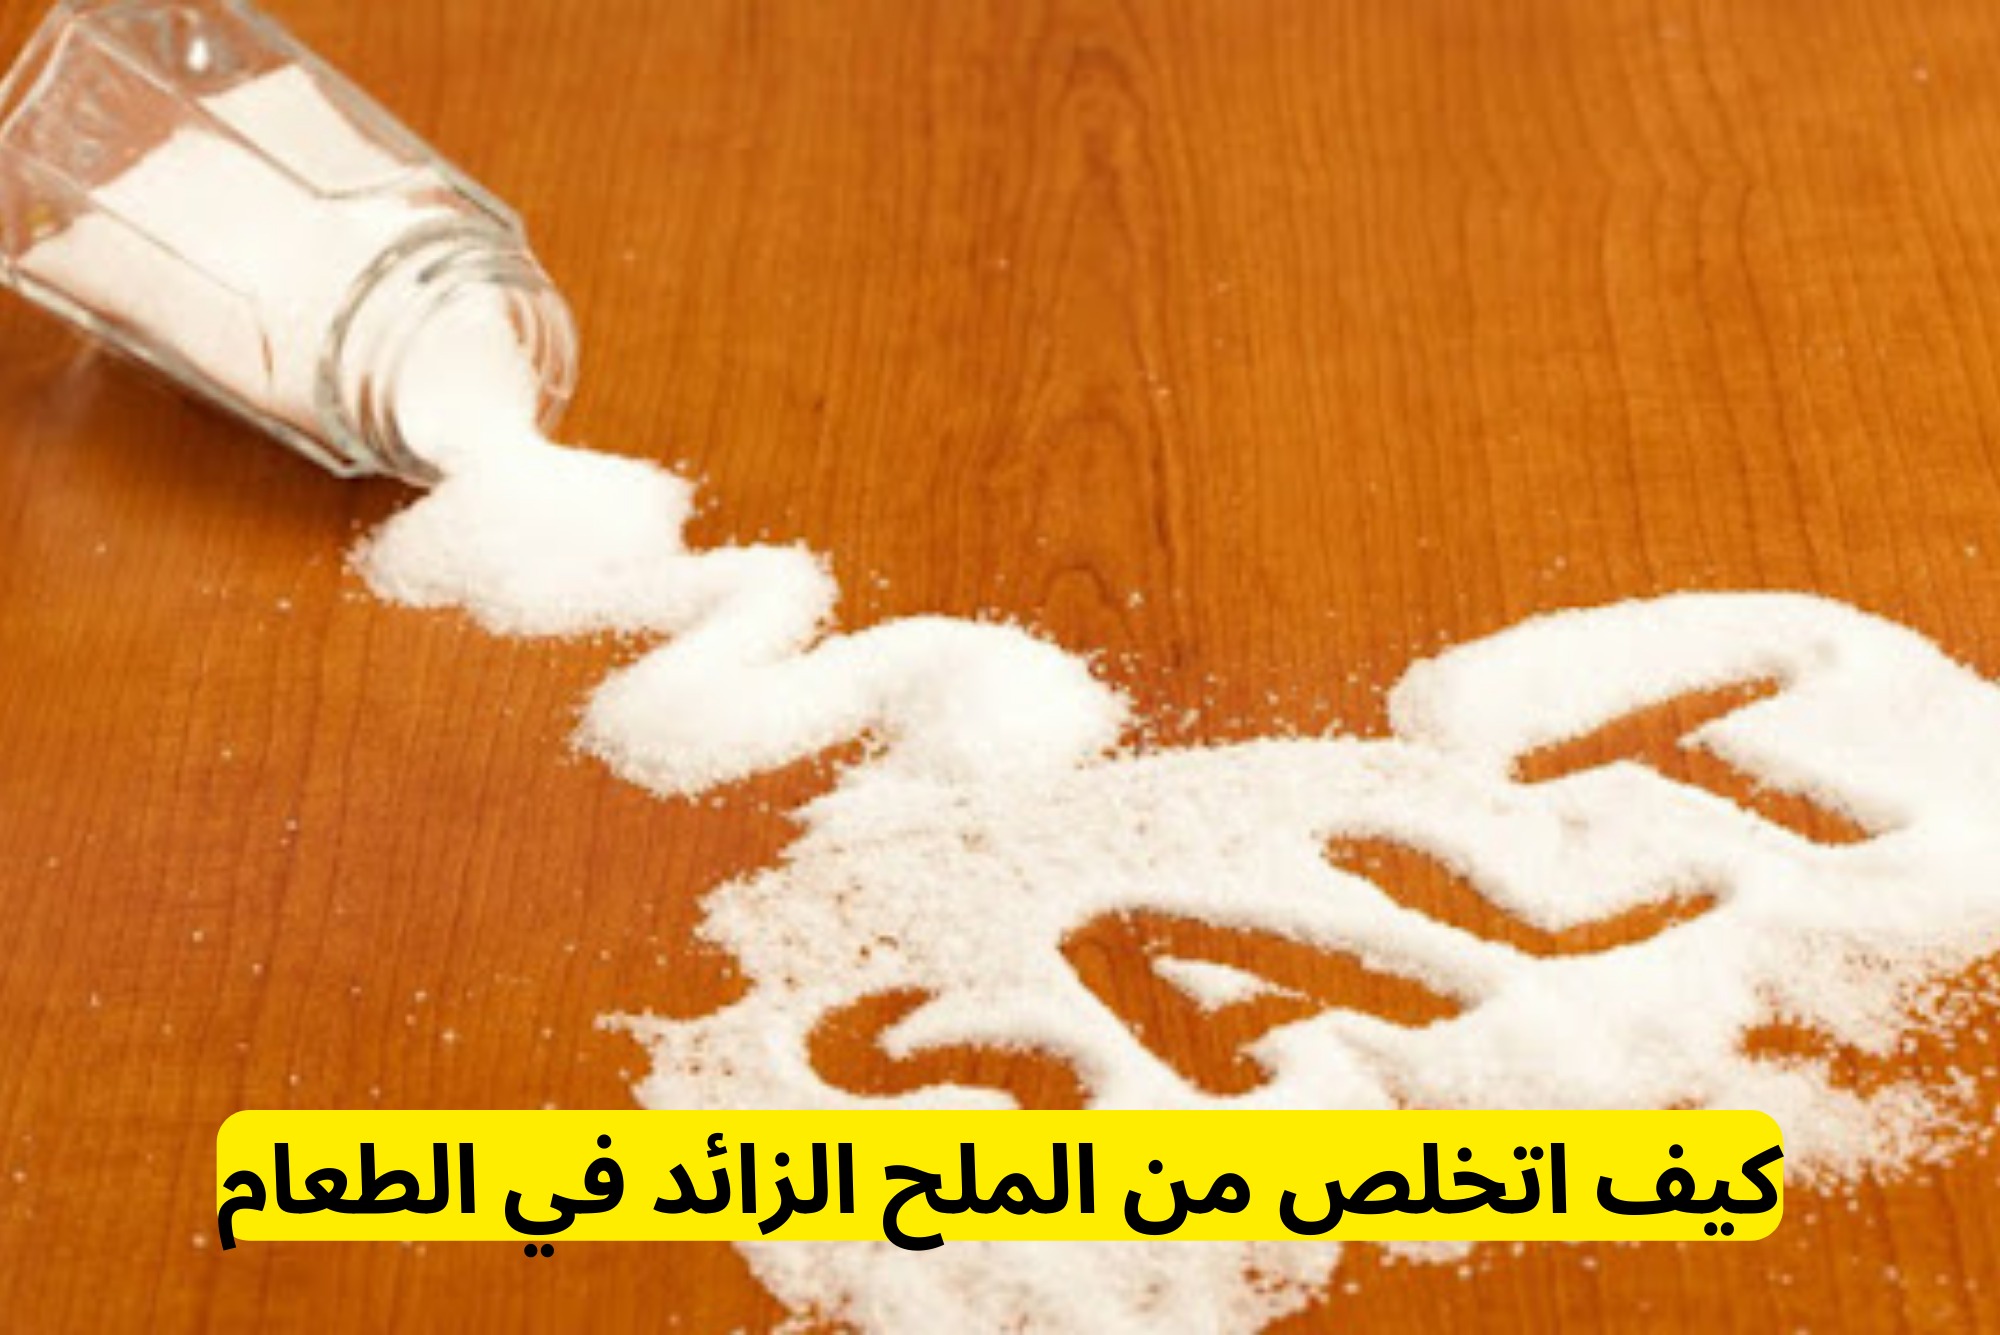 كيف اتخلص من الملح الزائد في الطعام